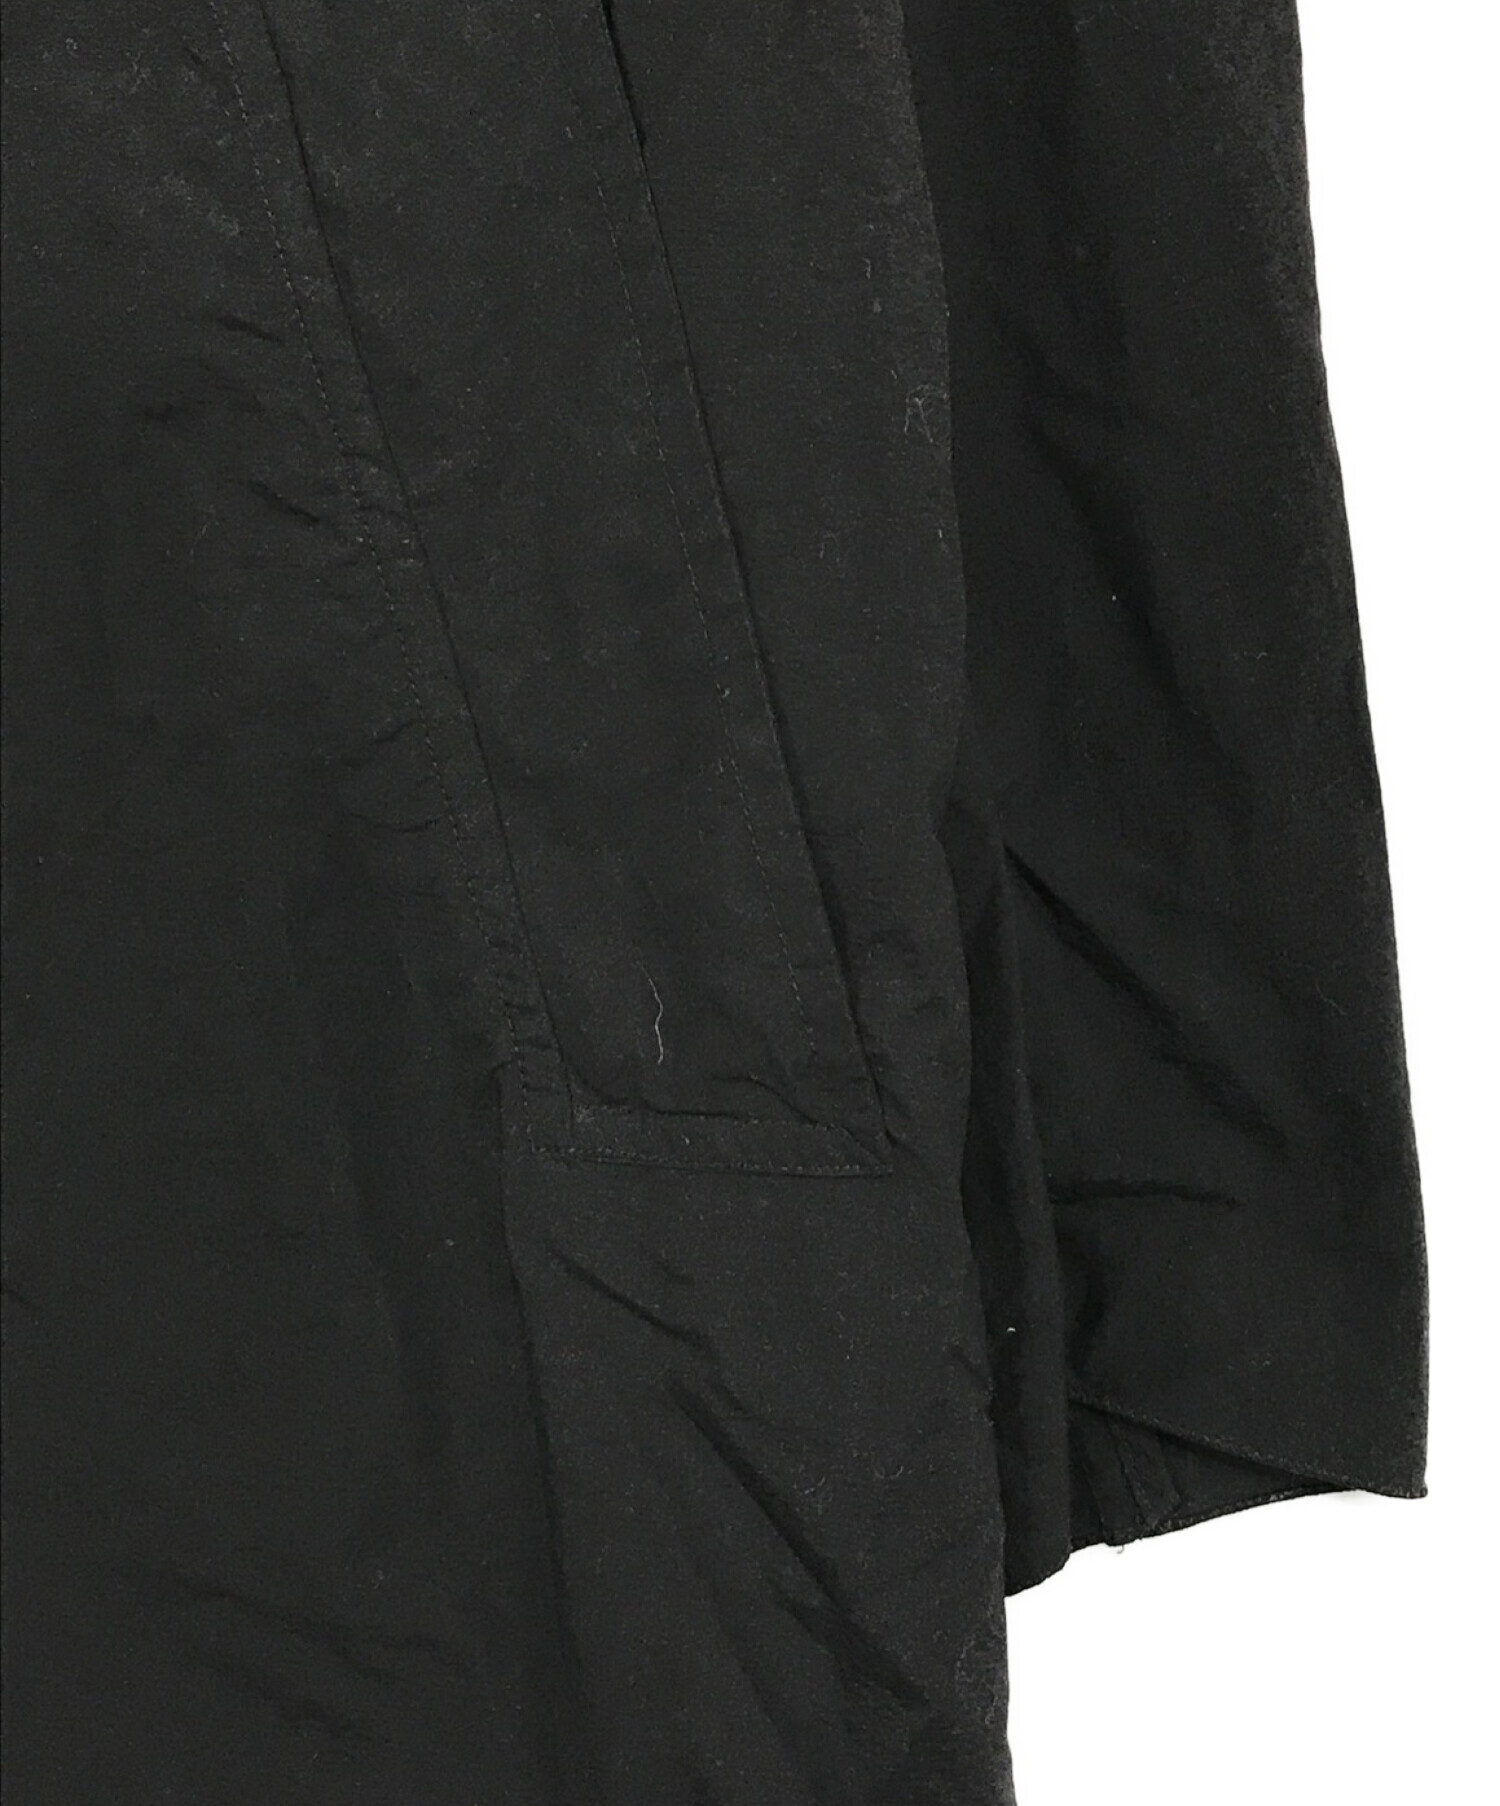 teatora (テアトラ) Wallet Coat ブラック サイズ:SIZE 48